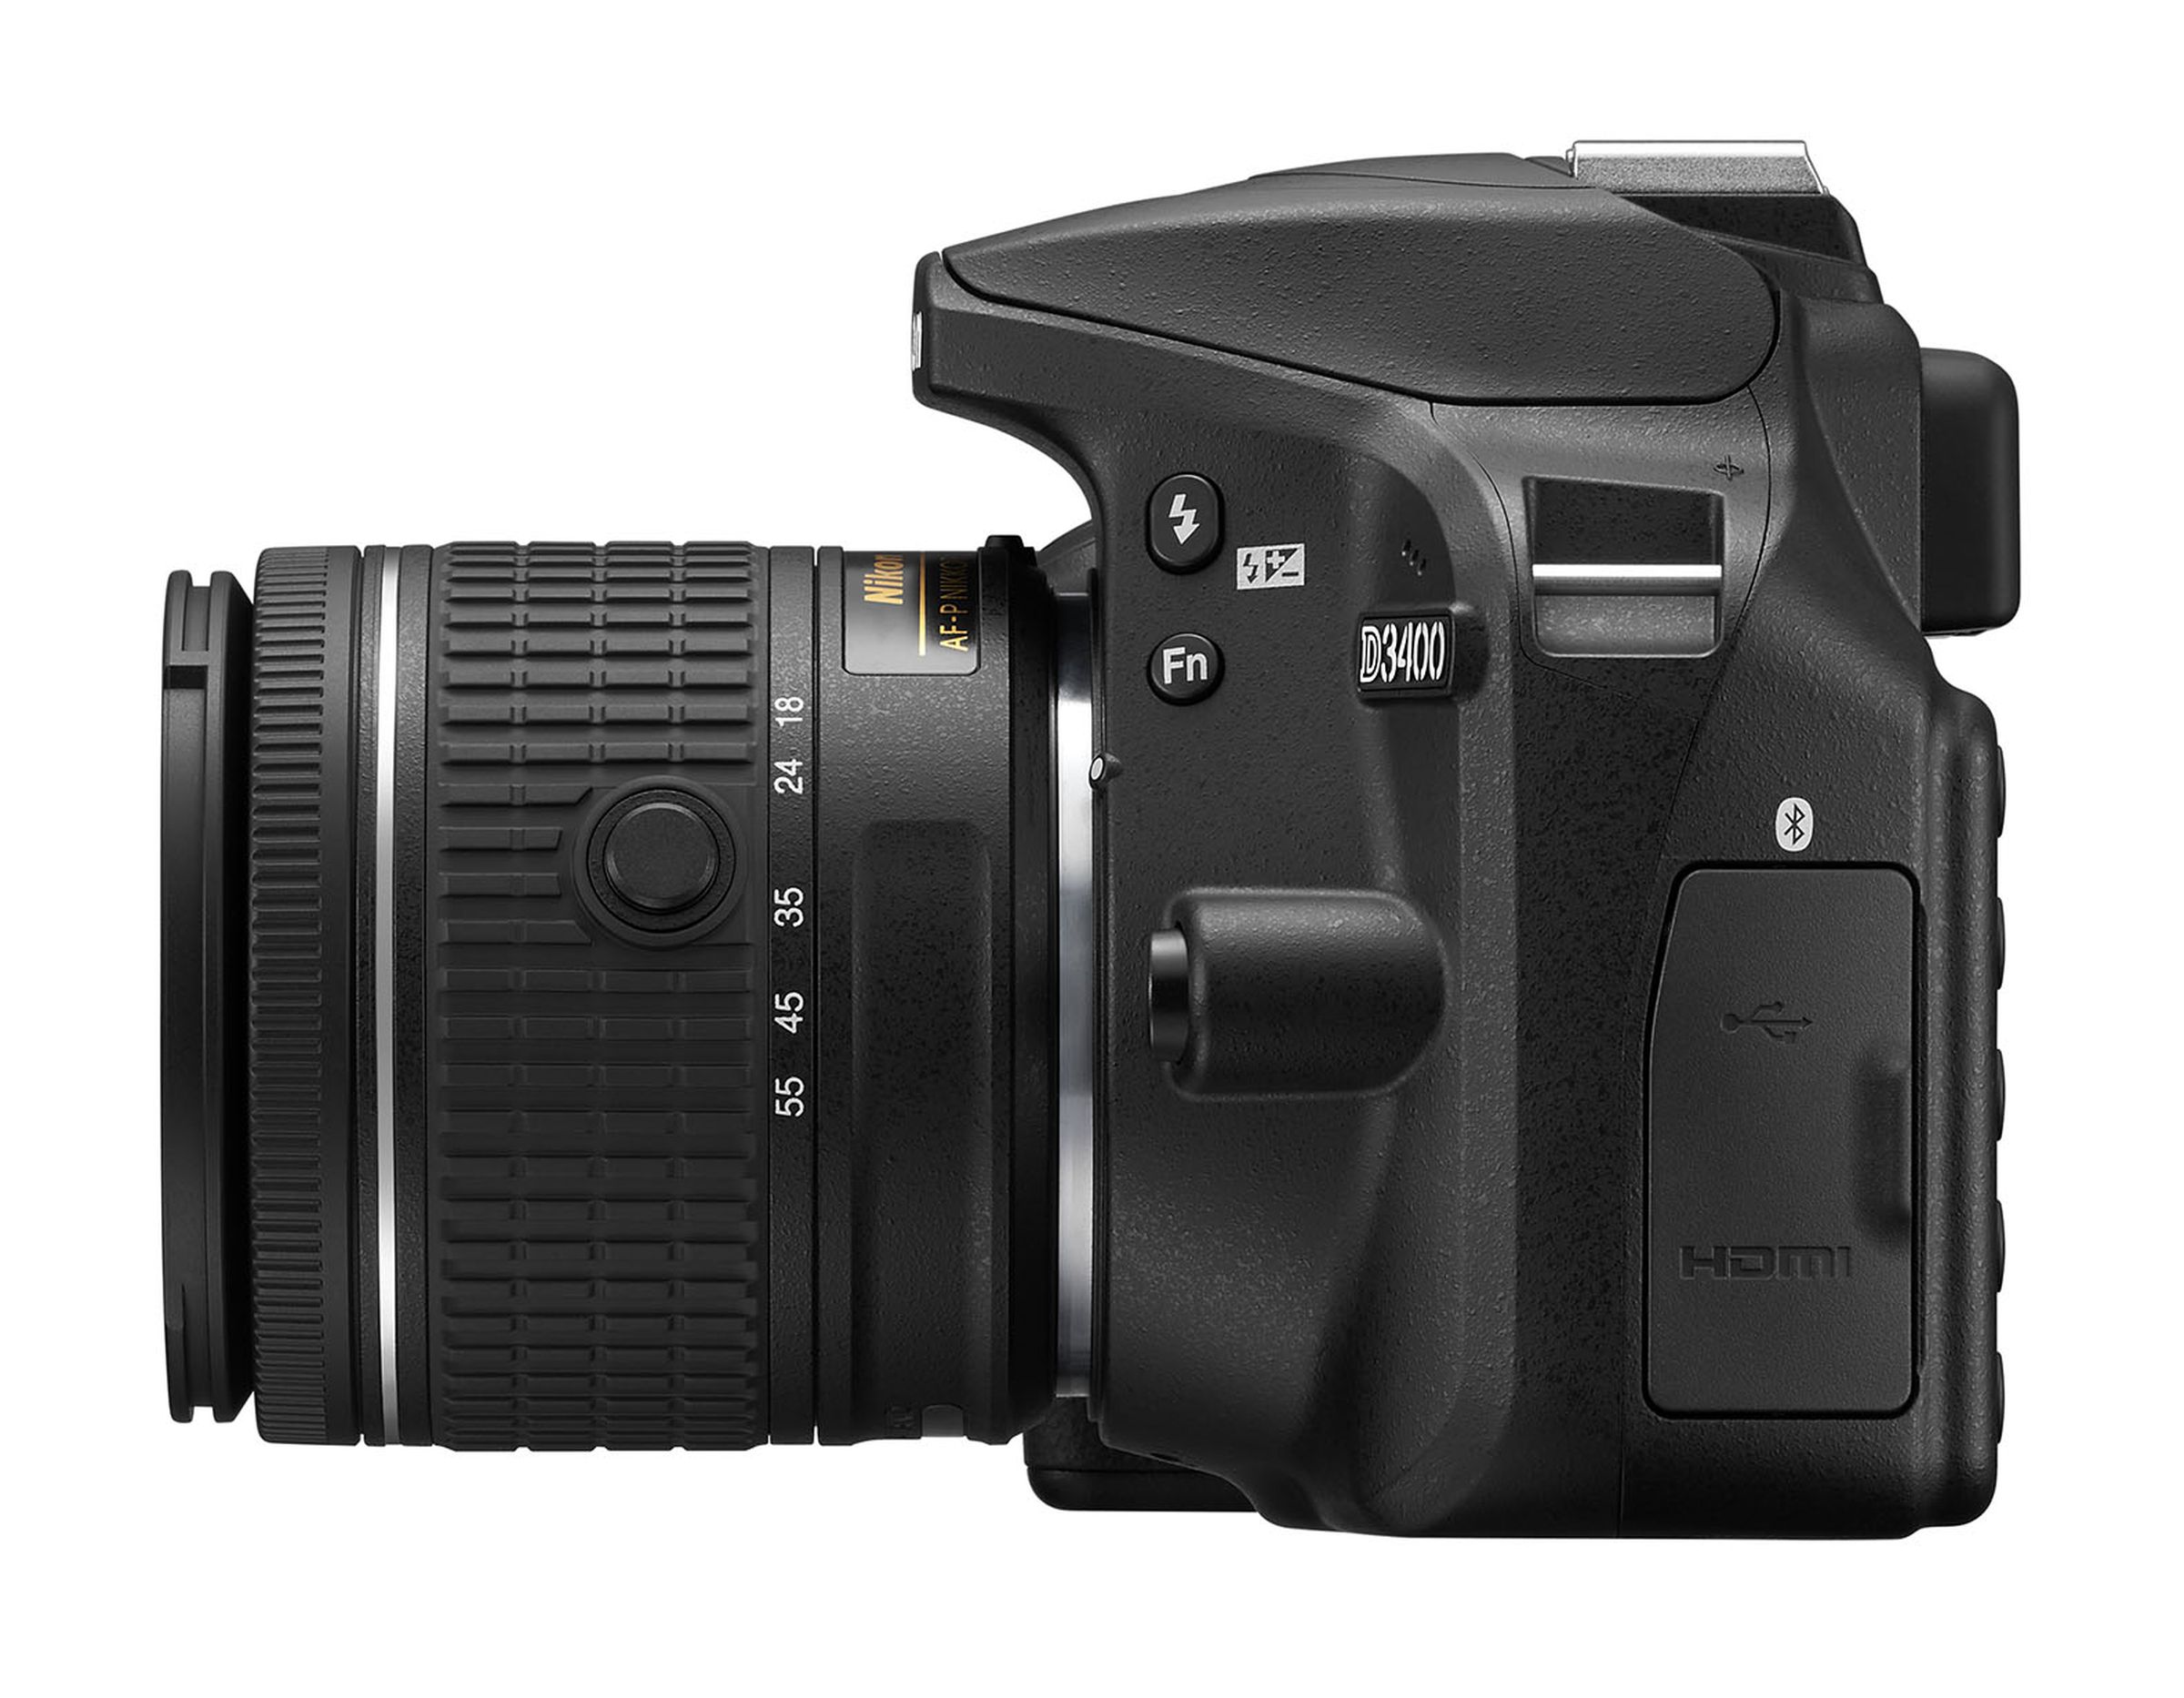 Nikon D3400 in photos